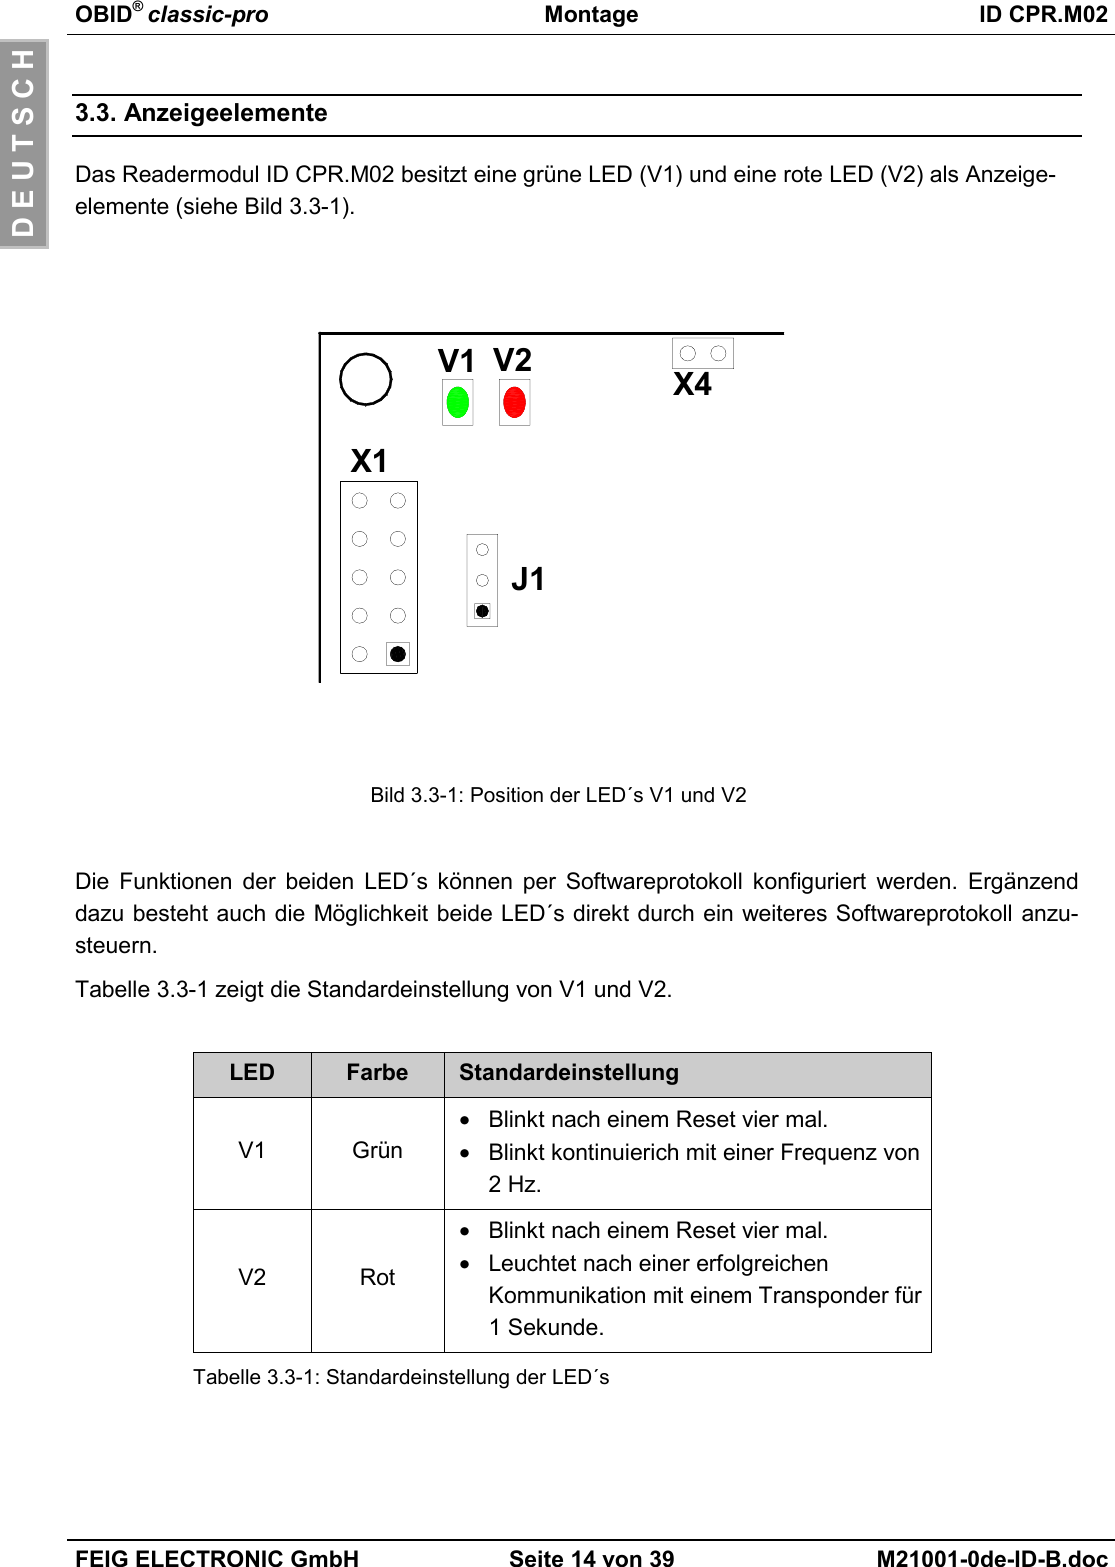 OBID® classic-pro Montage ID CPR.M02FEIG ELECTRONIC GmbH Seite 14 von 39 M21001-0de-ID-B.docD E U T S C H3.3. AnzeigeelementeDas Readermodul ID CPR.M02 besitzt eine grüne LED (V1) und eine rote LED (V2) als Anzeige-elemente (siehe Bild 3.3-1).Bild 3.3-1: Position der LED´s V1 und V2Die Funktionen der beiden LED´s können per Softwareprotokoll konfiguriert werden. Ergänzenddazu besteht auch die Möglichkeit beide LED´s direkt durch ein weiteres Softwareprotokoll anzu-steuern.Tabelle 3.3-1 zeigt die Standardeinstellung von V1 und V2.LED Farbe StandardeinstellungV1 Grün•  Blinkt nach einem Reset vier mal.•  Blinkt kontinuierich mit einer Frequenz von2 Hz.V2 Rot•  Blinkt nach einem Reset vier mal.•  Leuchtet nach einer erfolgreichenKommunikation mit einem Transponder für1 Sekunde.Tabelle 3.3-1: Standardeinstellung der LED´sX1J1V2V1 X4